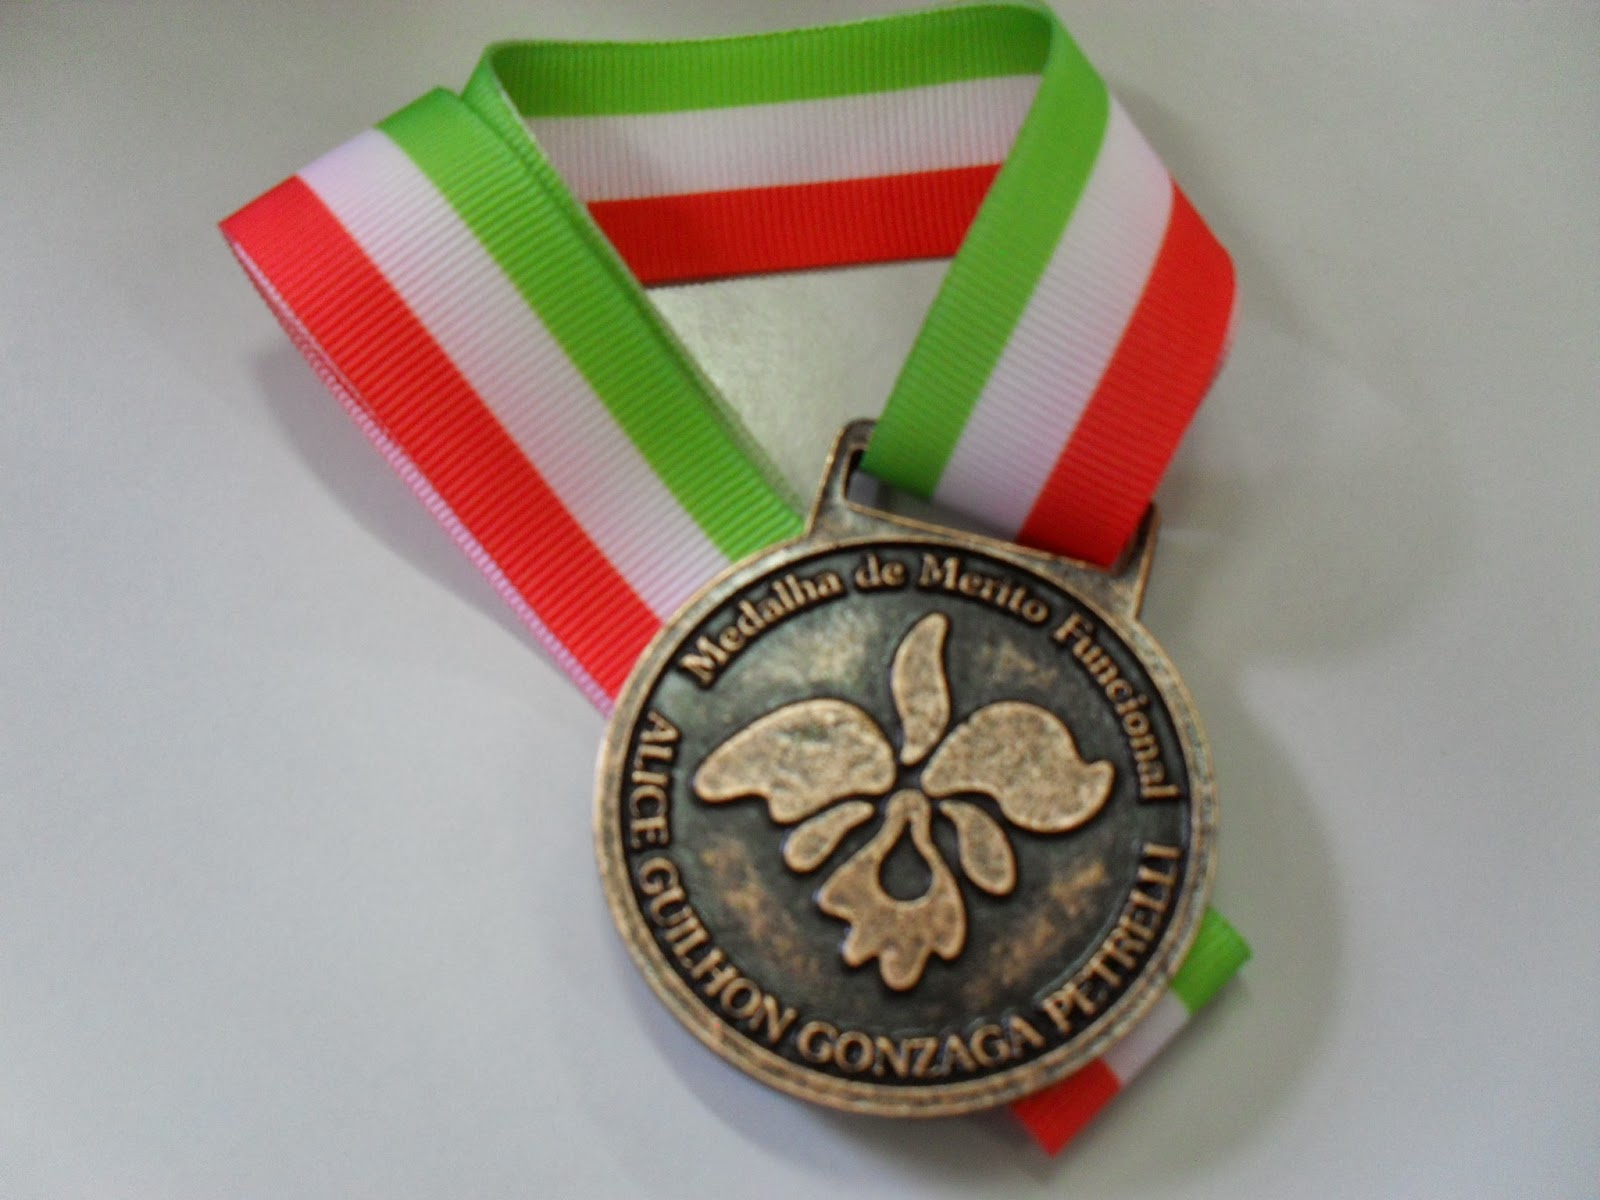 Imagem da Medalha do Mérito Funcional